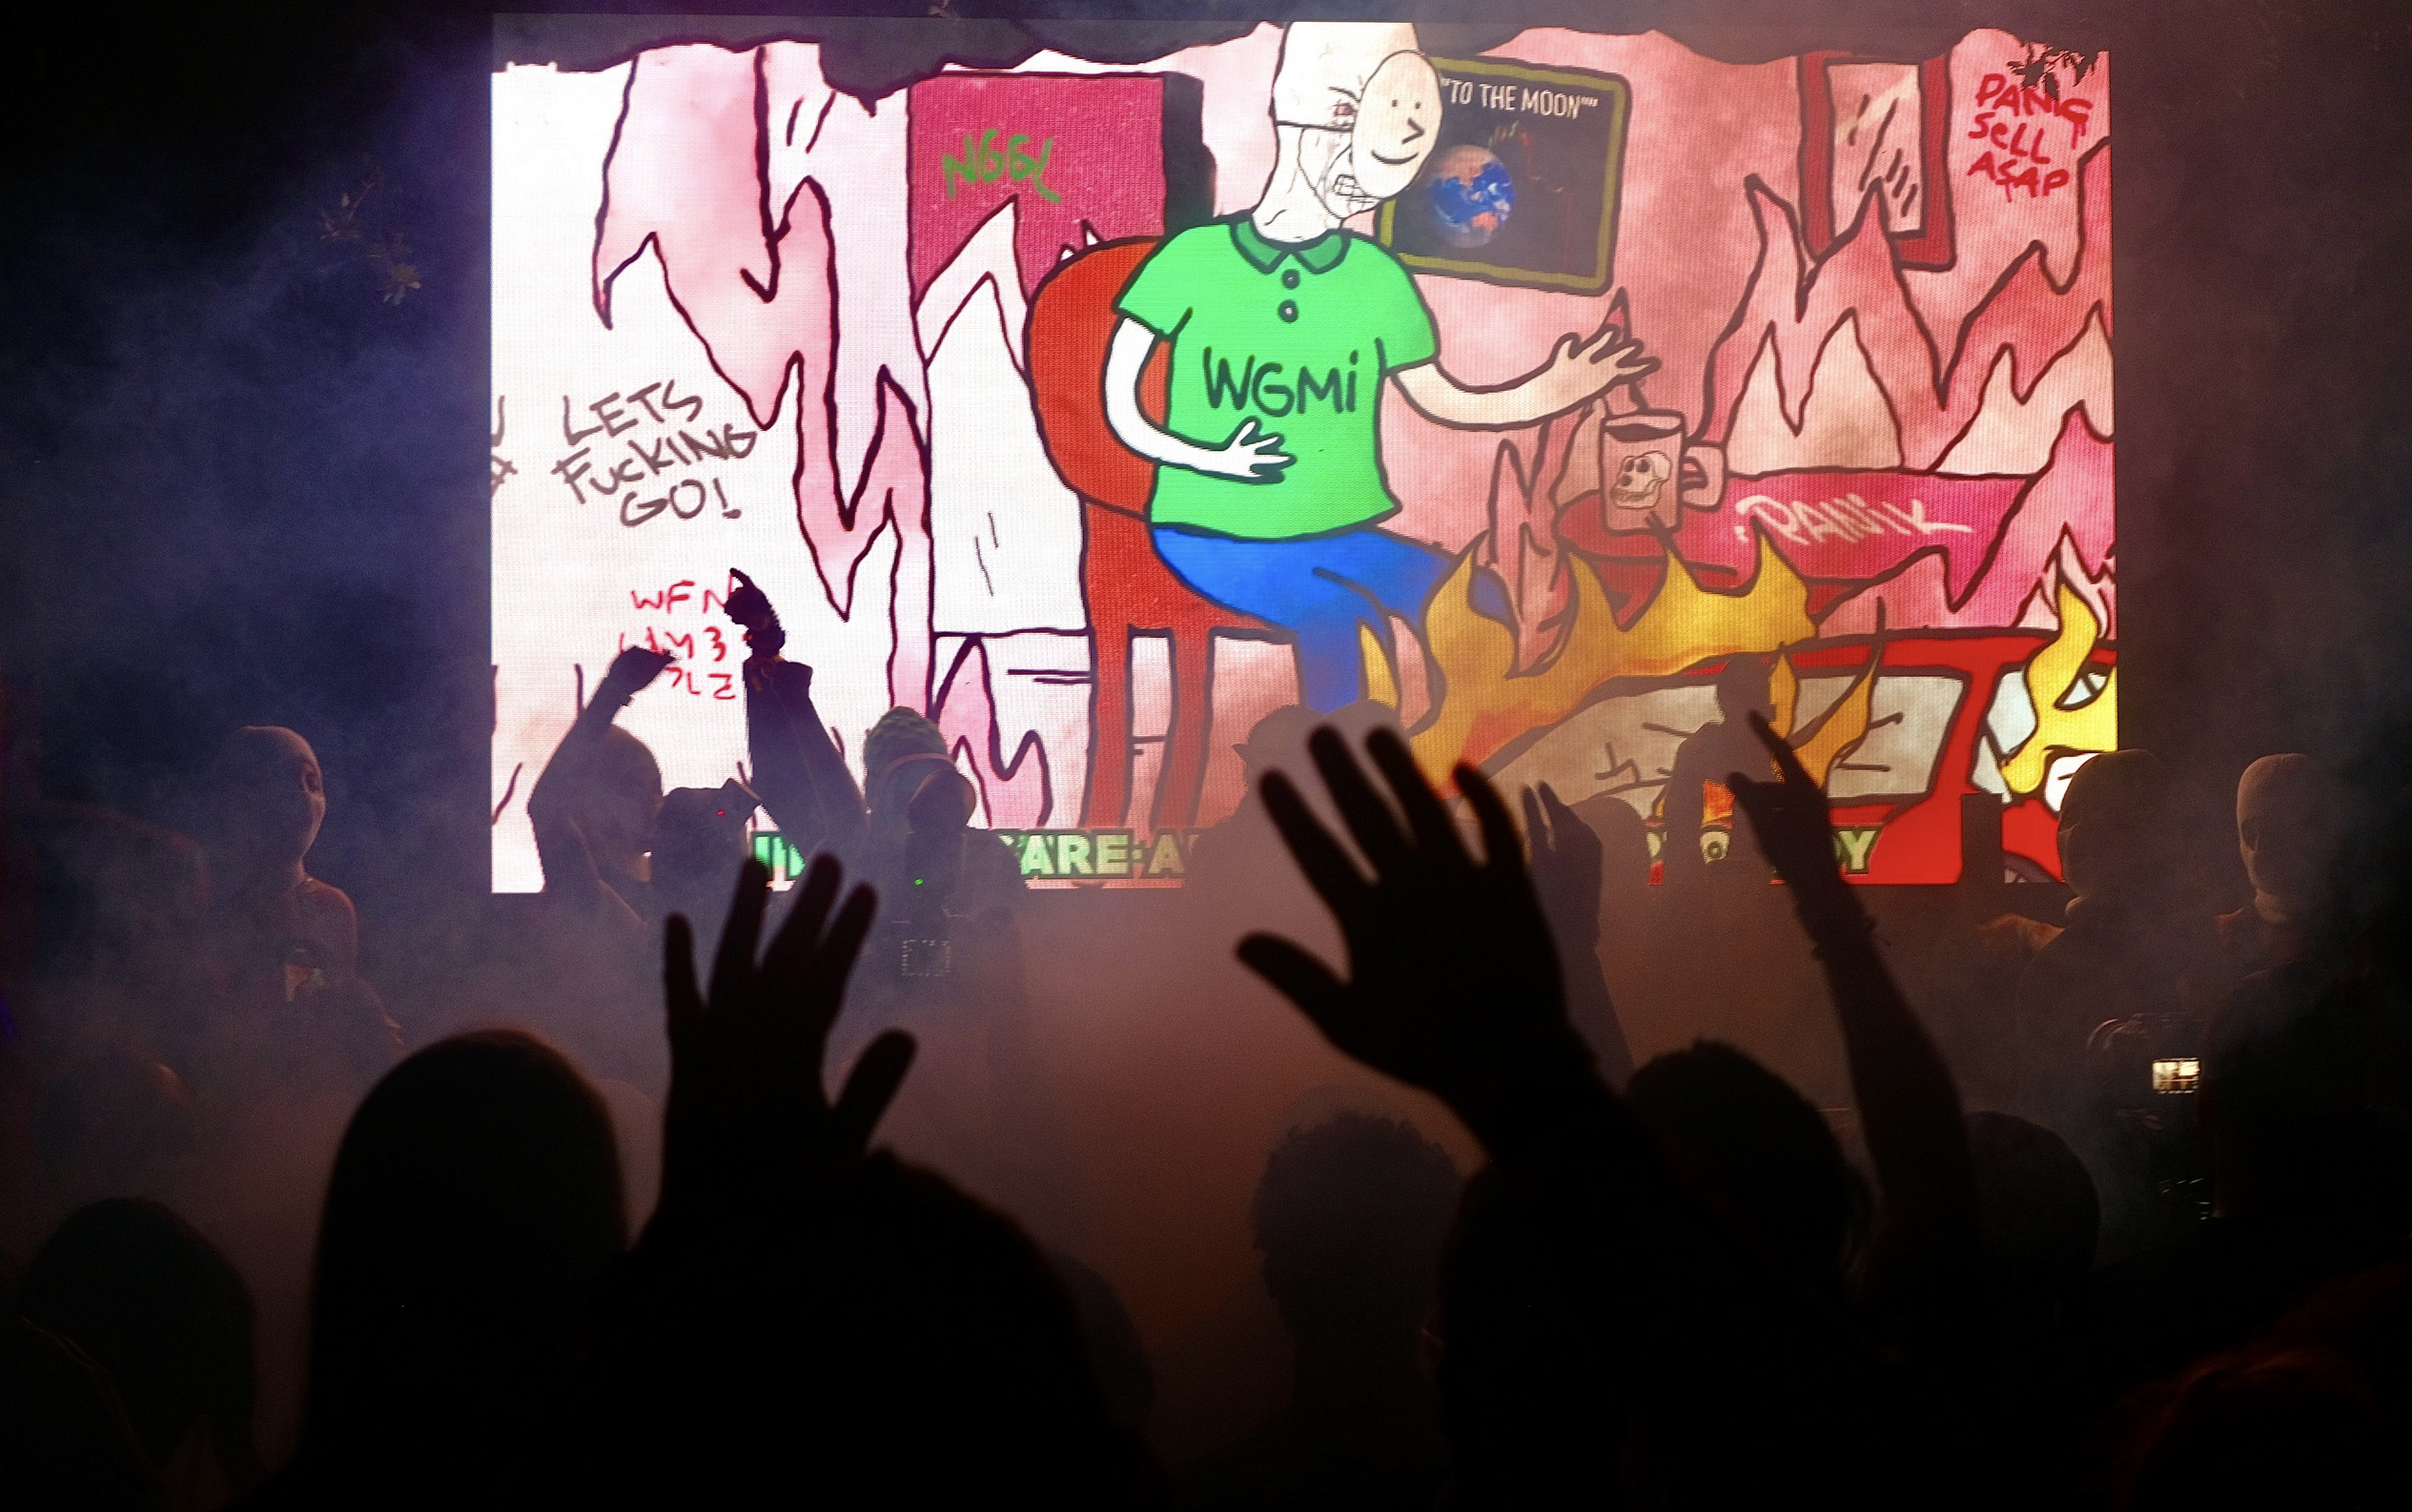 La presentación de Pussy Riot en ICA Miami combinó punk, cabaret, videoperformance y activismo. (Ronen Suarc)